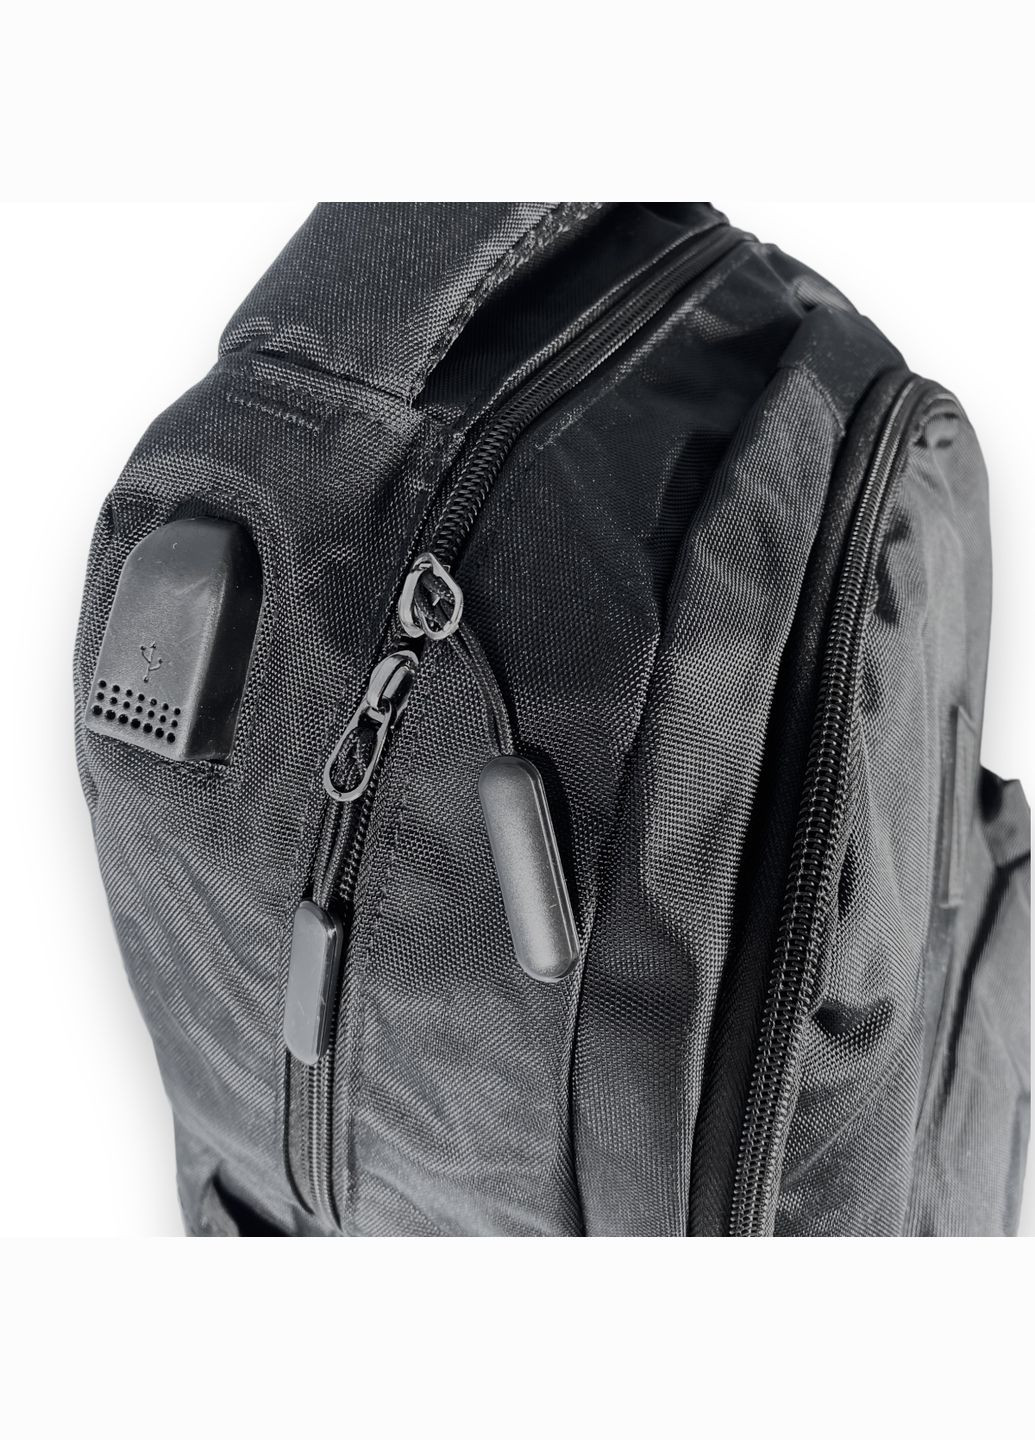 Рюкзак 20 л, два відділення, бічні кишені, фронтальна кишеня, USB вхід, розмір 45*30*15 см, JU XILONG (286421469)